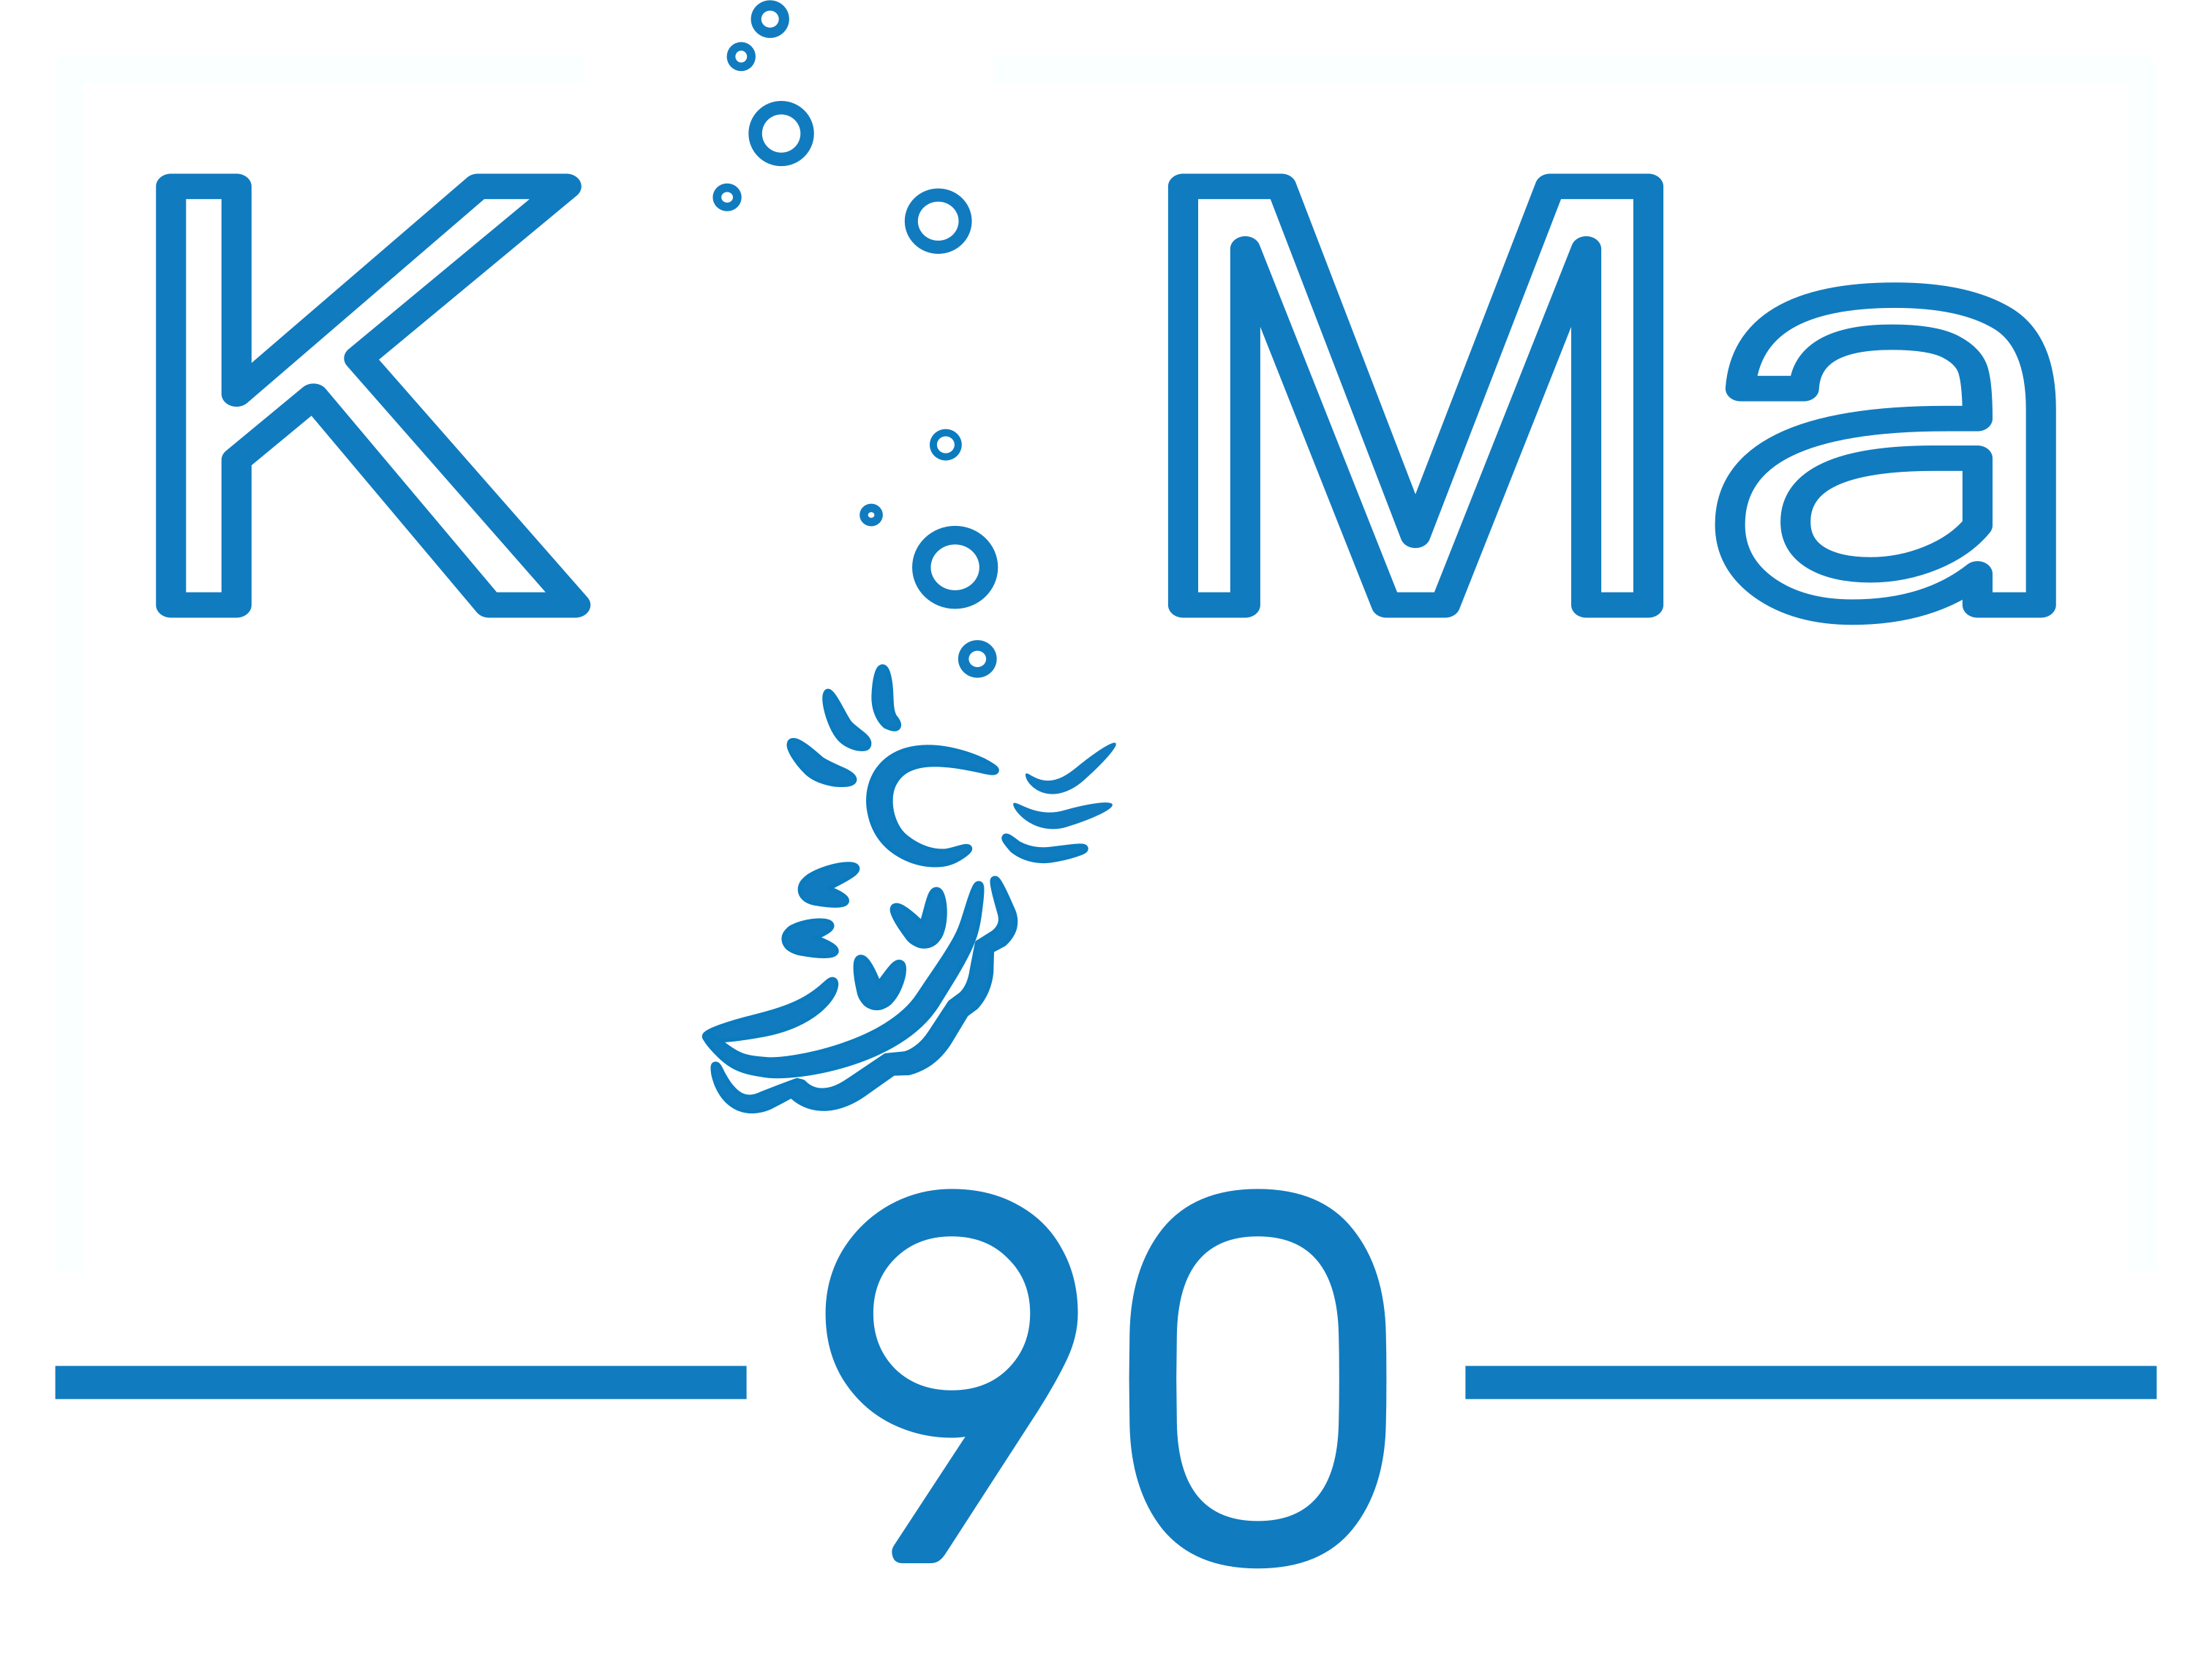 KoMa90Bonn